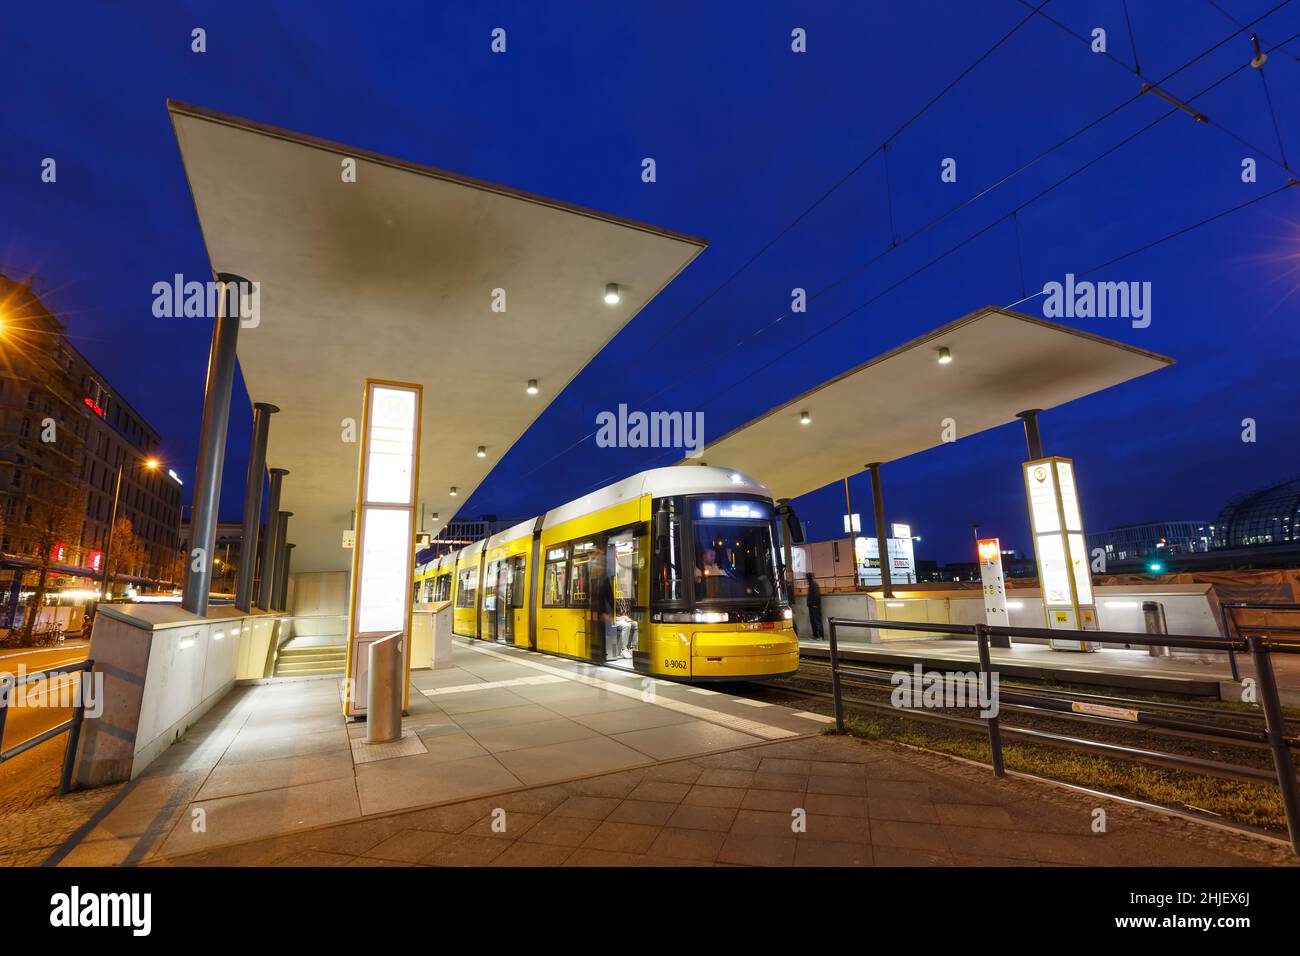 Berlin, Germany - April 22, 2021: Tram Bombardier Flexity light rail public transport Hauptbahnhof main station in Berlin, Germany. Stock Photo